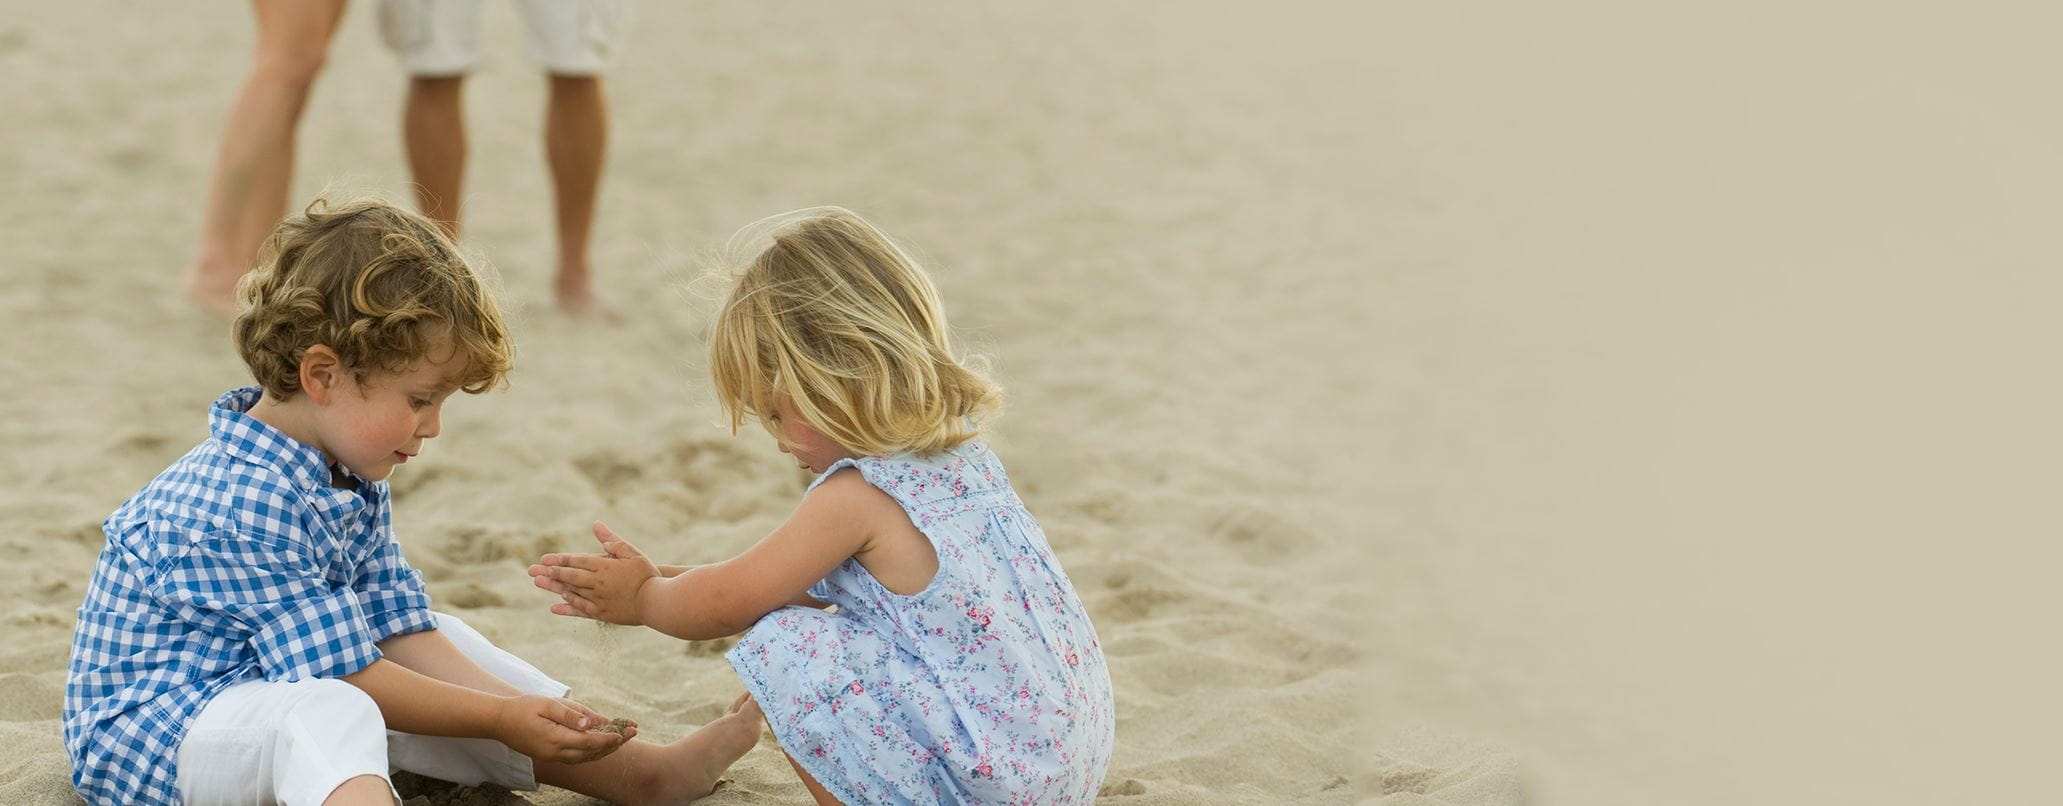 crianças a brincar na areia da praia